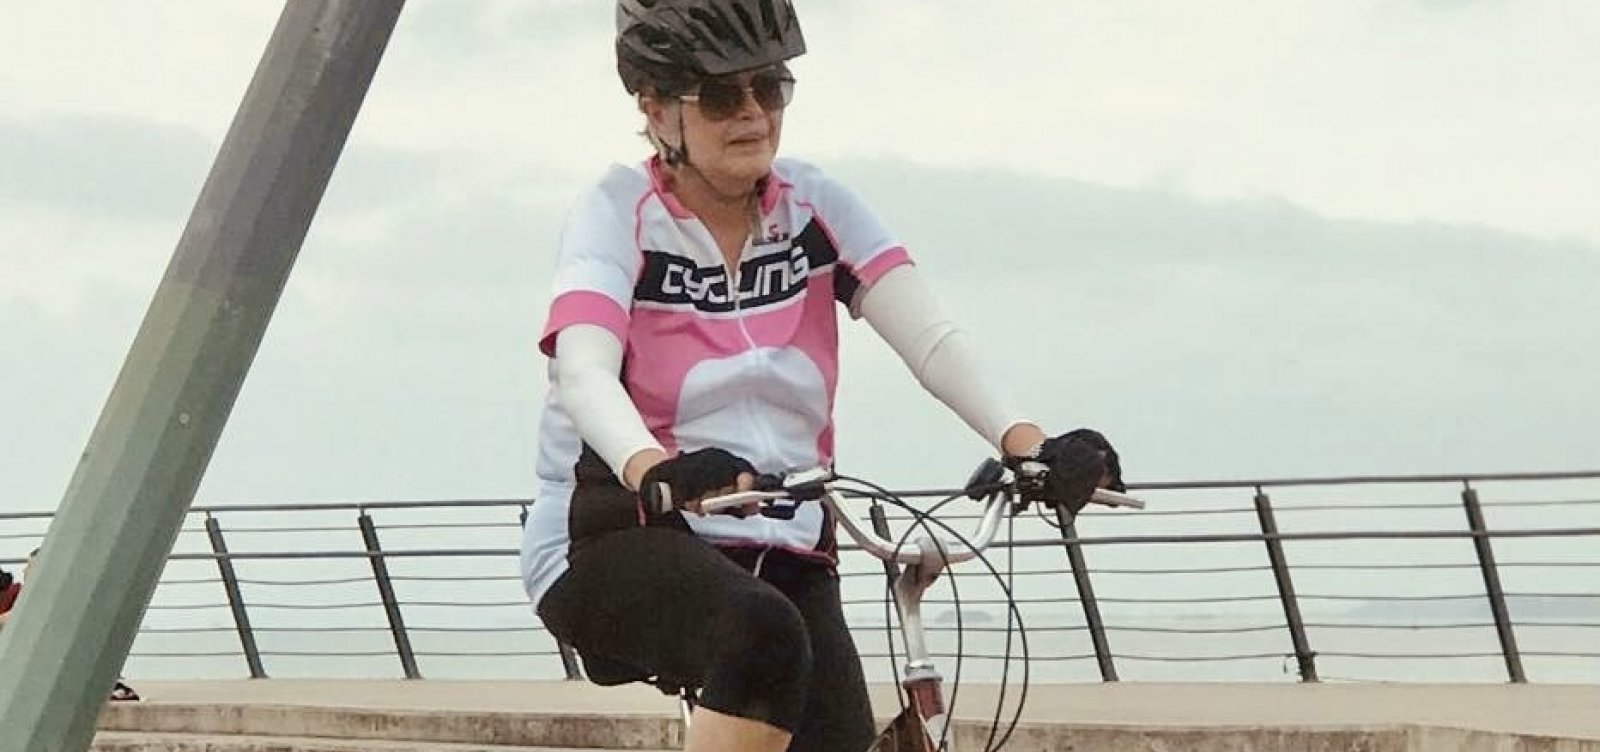 Dilma desmente boato sobre doença e posta foto de bike: "Eu e a minha embolia"